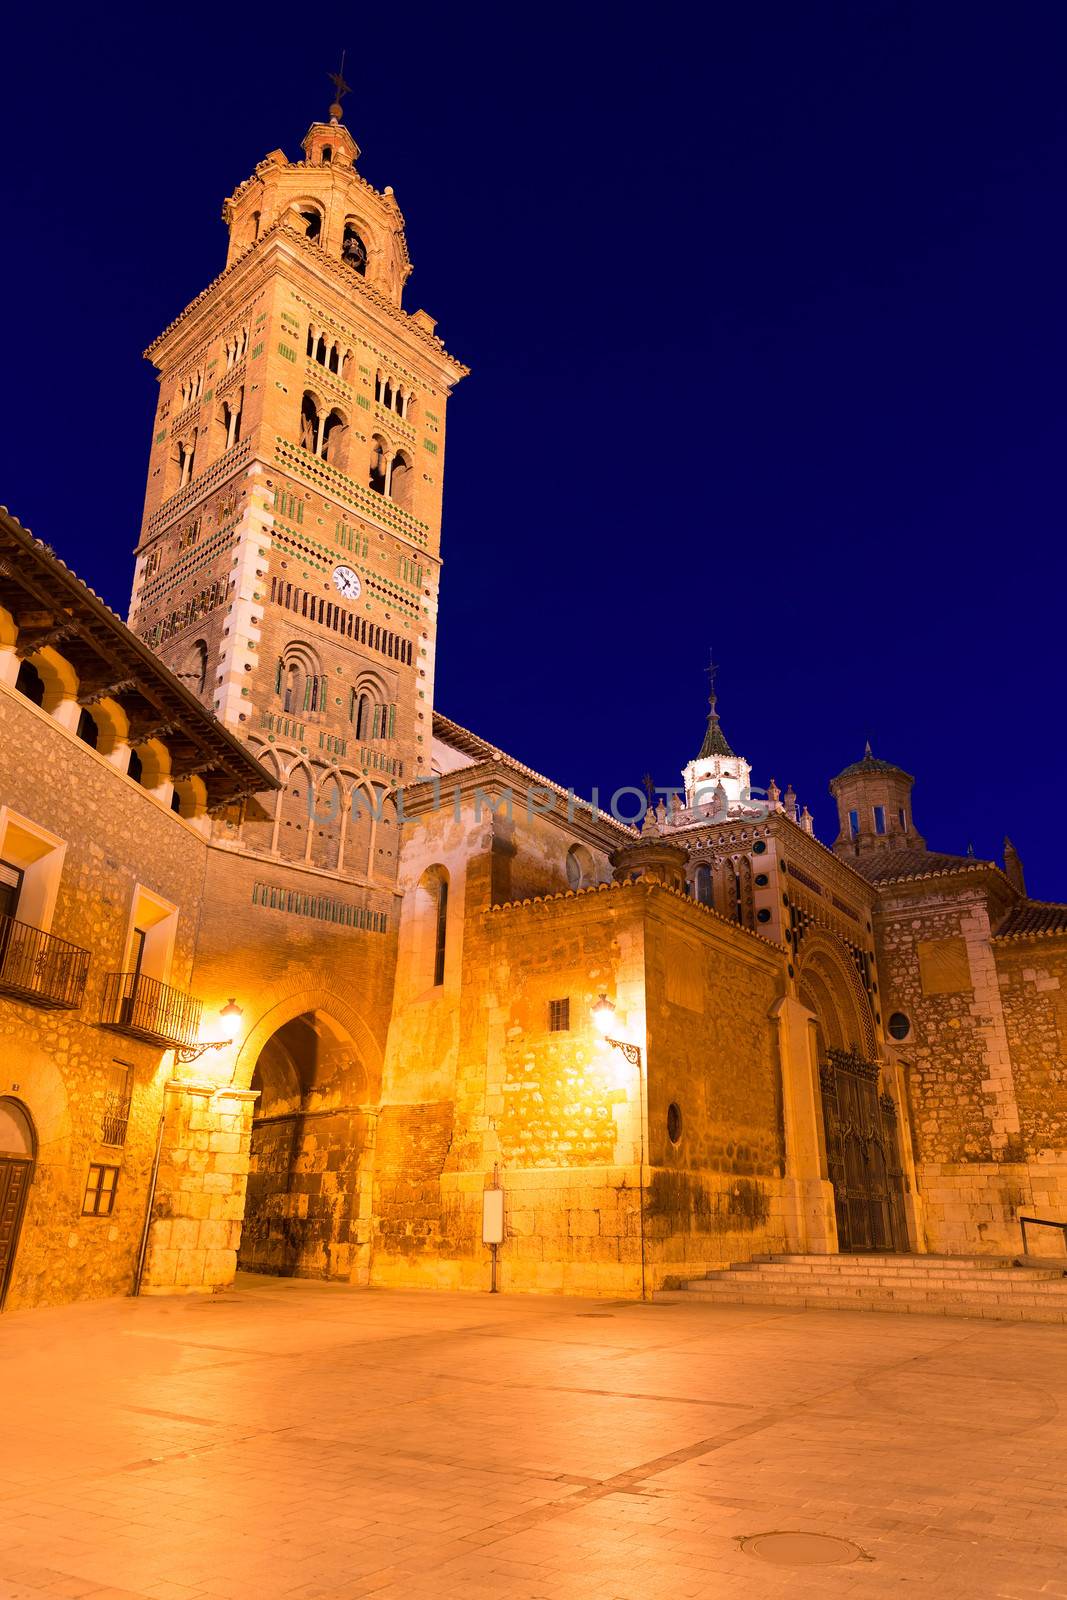 Aragon Teruel Cathedral Mudejar Santa Maria Mediavilla Unesco heritage in Spain